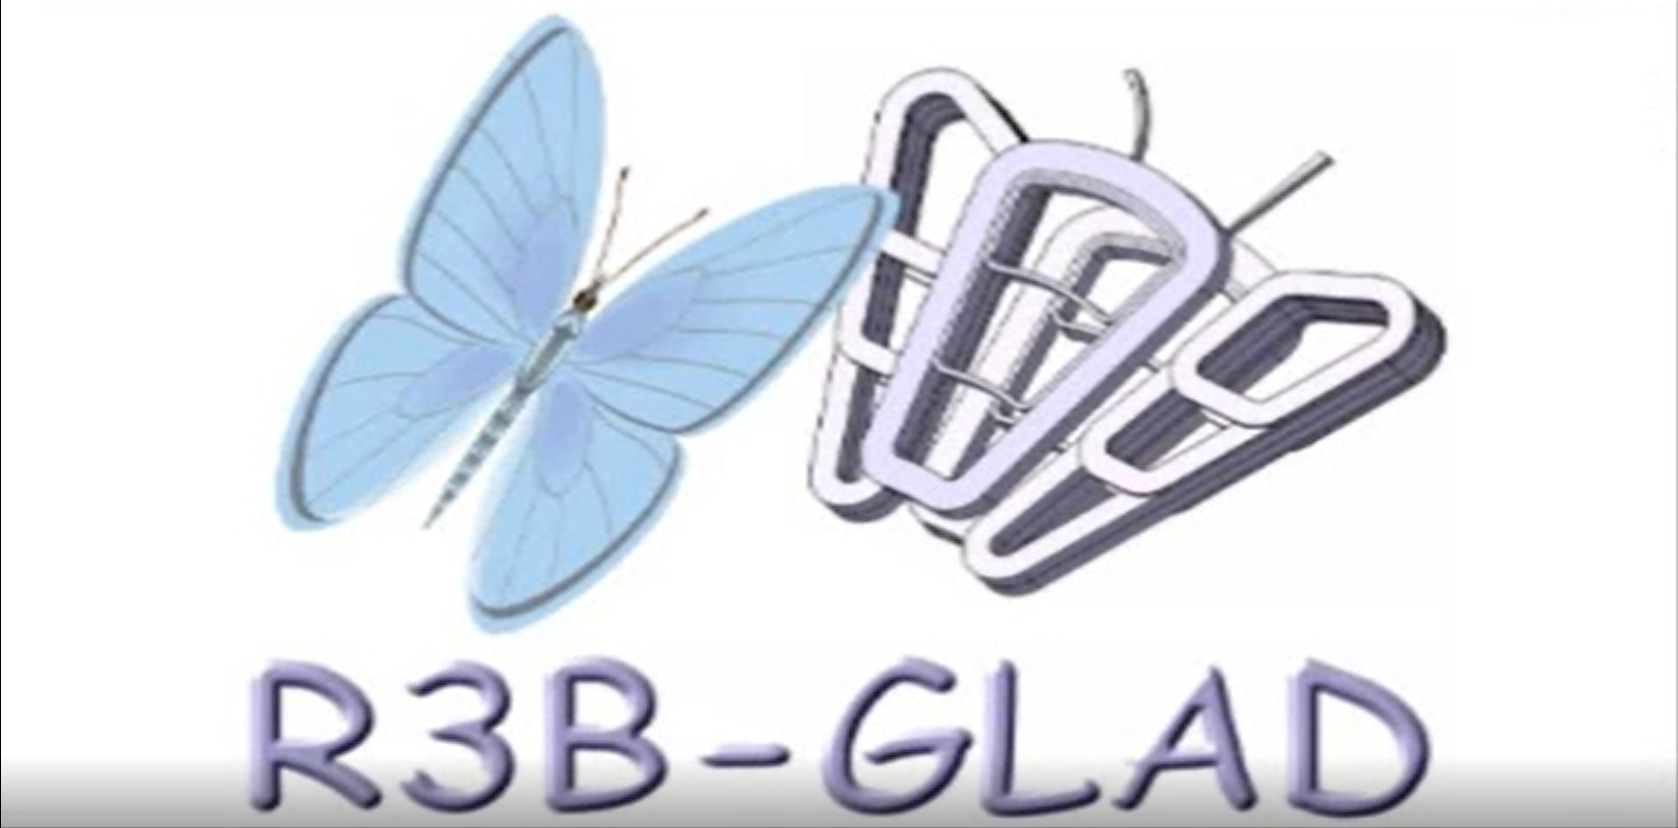 R3B-Glad